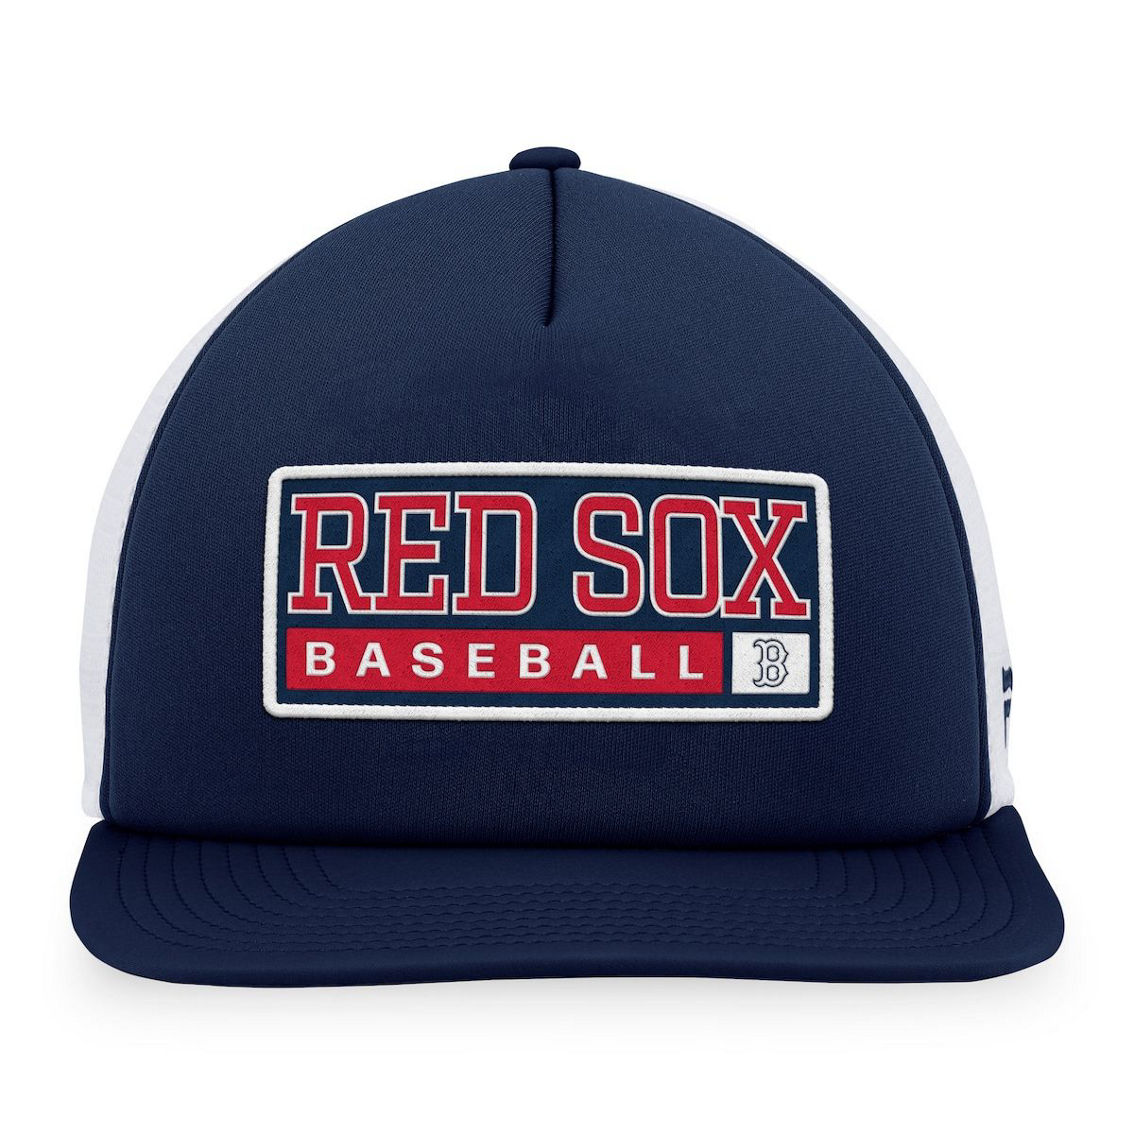 Majestic Men's Navy/White Boston Red Sox Foam Trucker Snapback Hat - Image 3 of 4